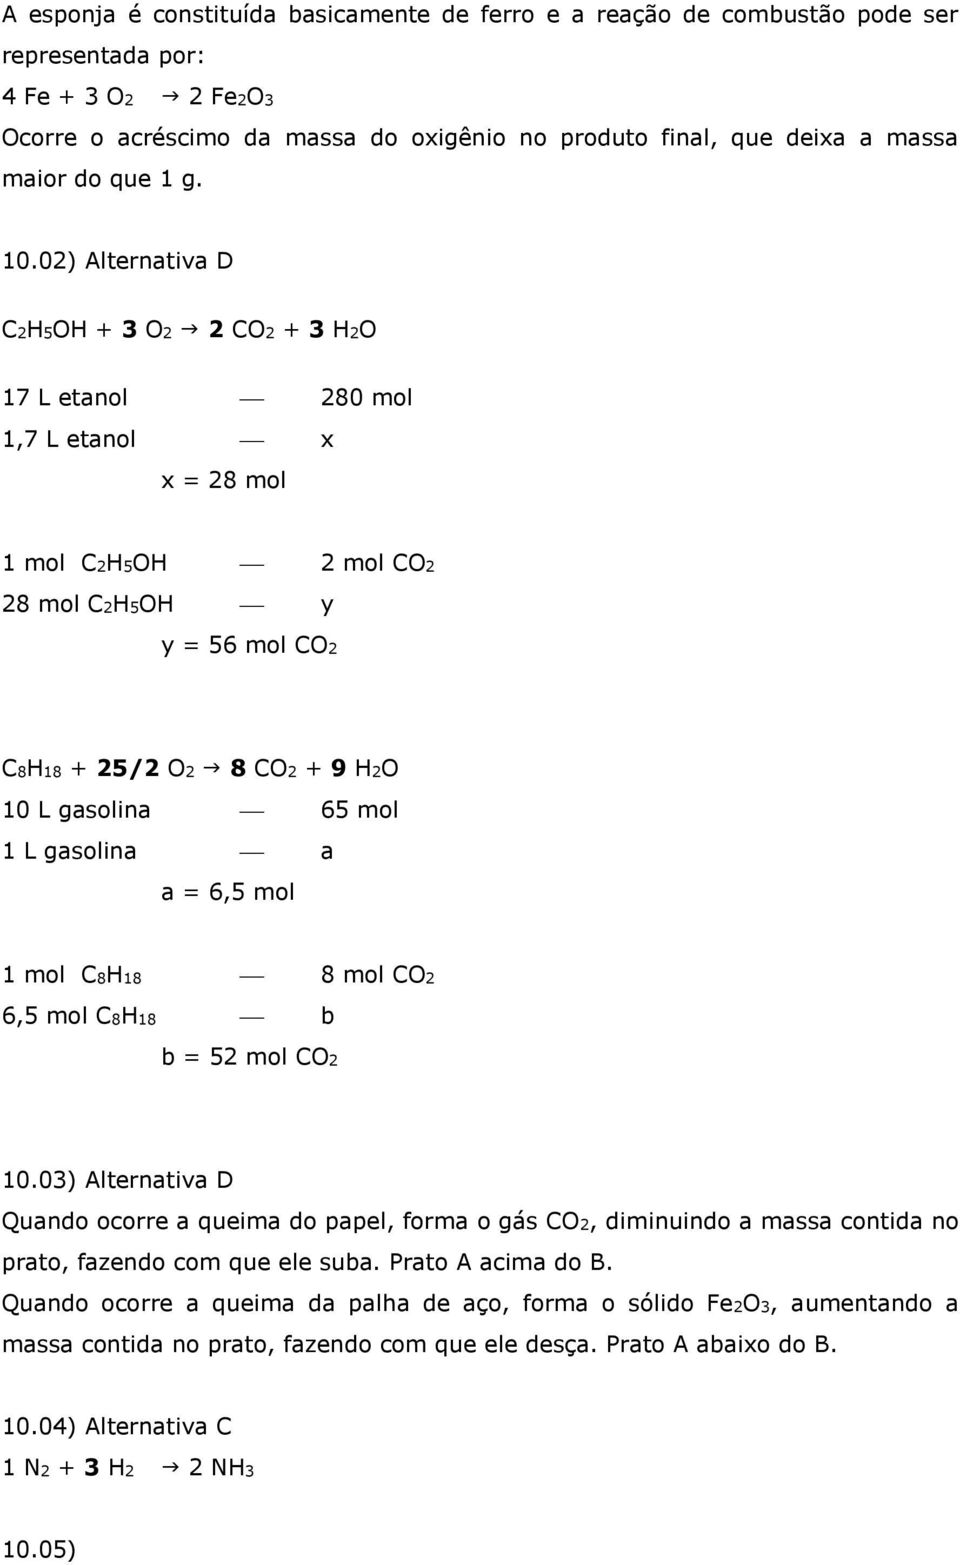 02) Alternativa D C2H5OH + 3 O2 2 CO2 + 3 H2O 17 L etanol 280 mol 1,7 L etanol x x = 28 mol 1 mol C2H5OH 2 mol CO2 28 mol C2H5OH y y = 56 mol CO2 C8H18 + 25/2 O2 8 CO2 + 9 H2O 10 L gasolina 65 mol 1